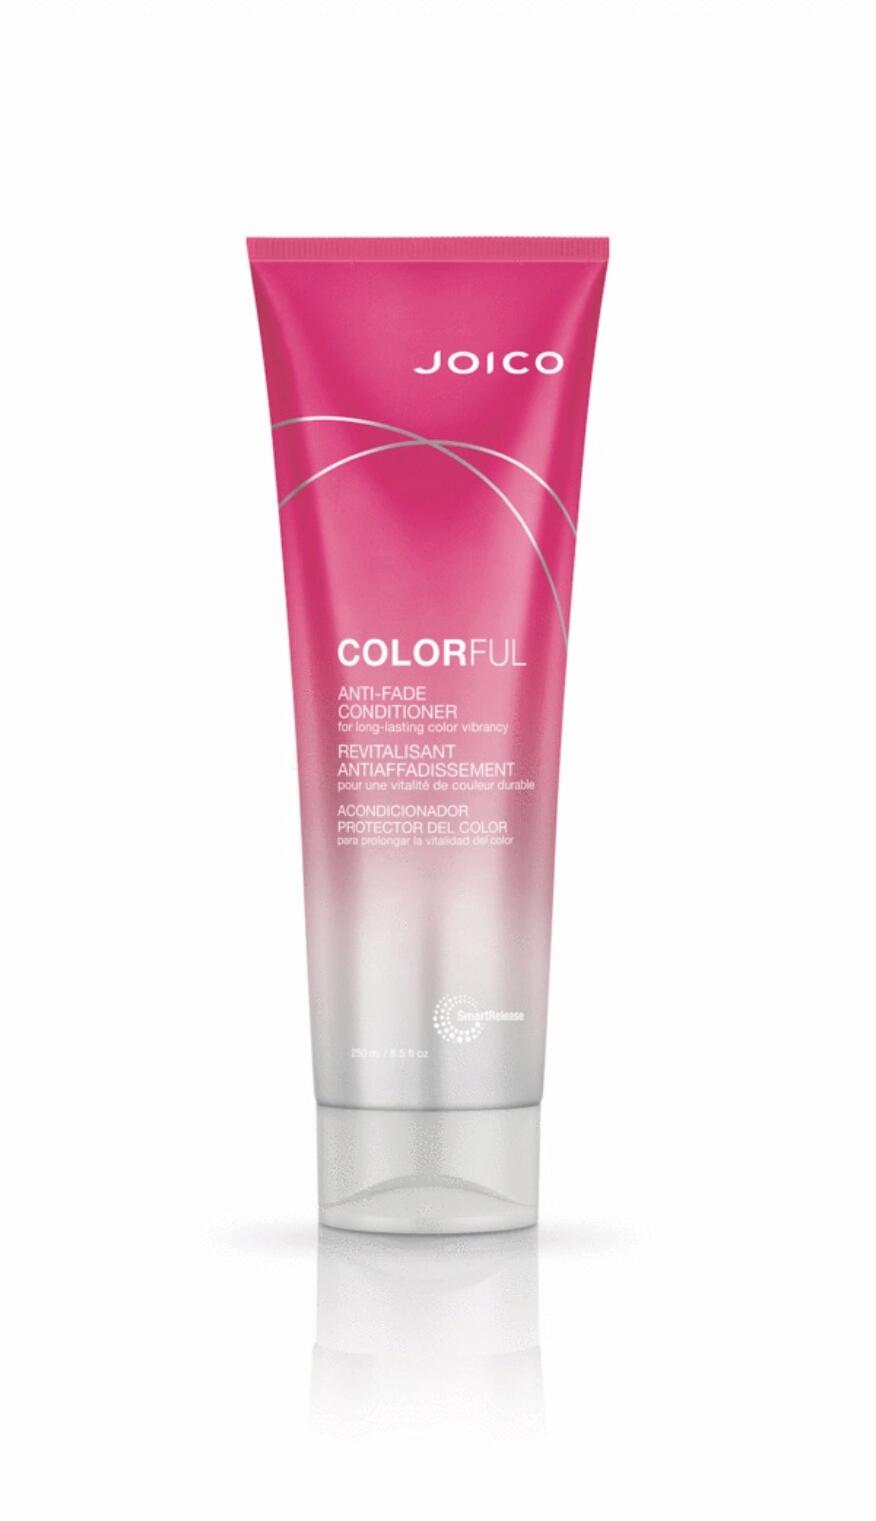 Joico Colorful Anti-Fade Conditioner [250ml]